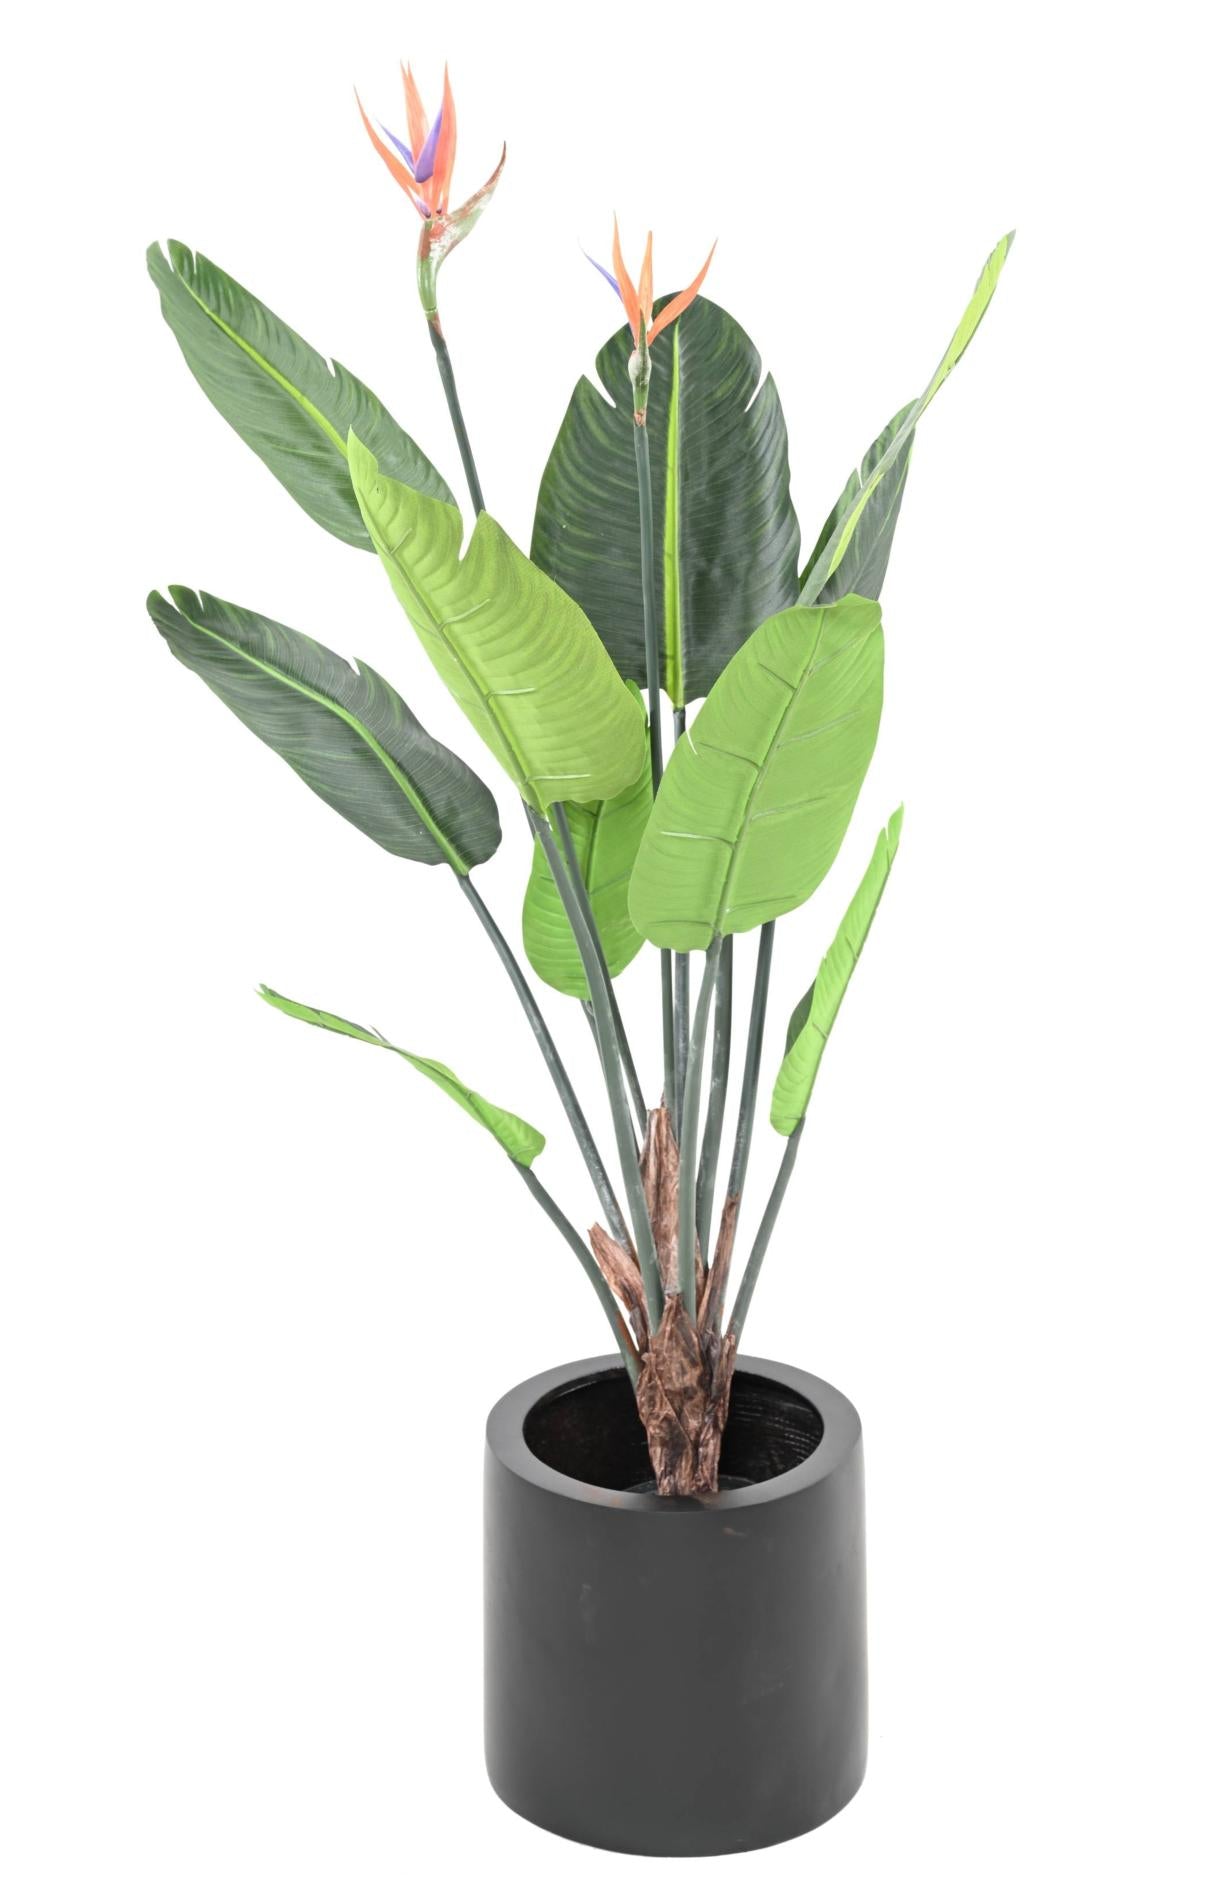 Plante artificielle tropicale Strelitzia 2 fleurs 10 feuilles - décoration intérieure - H.120cm